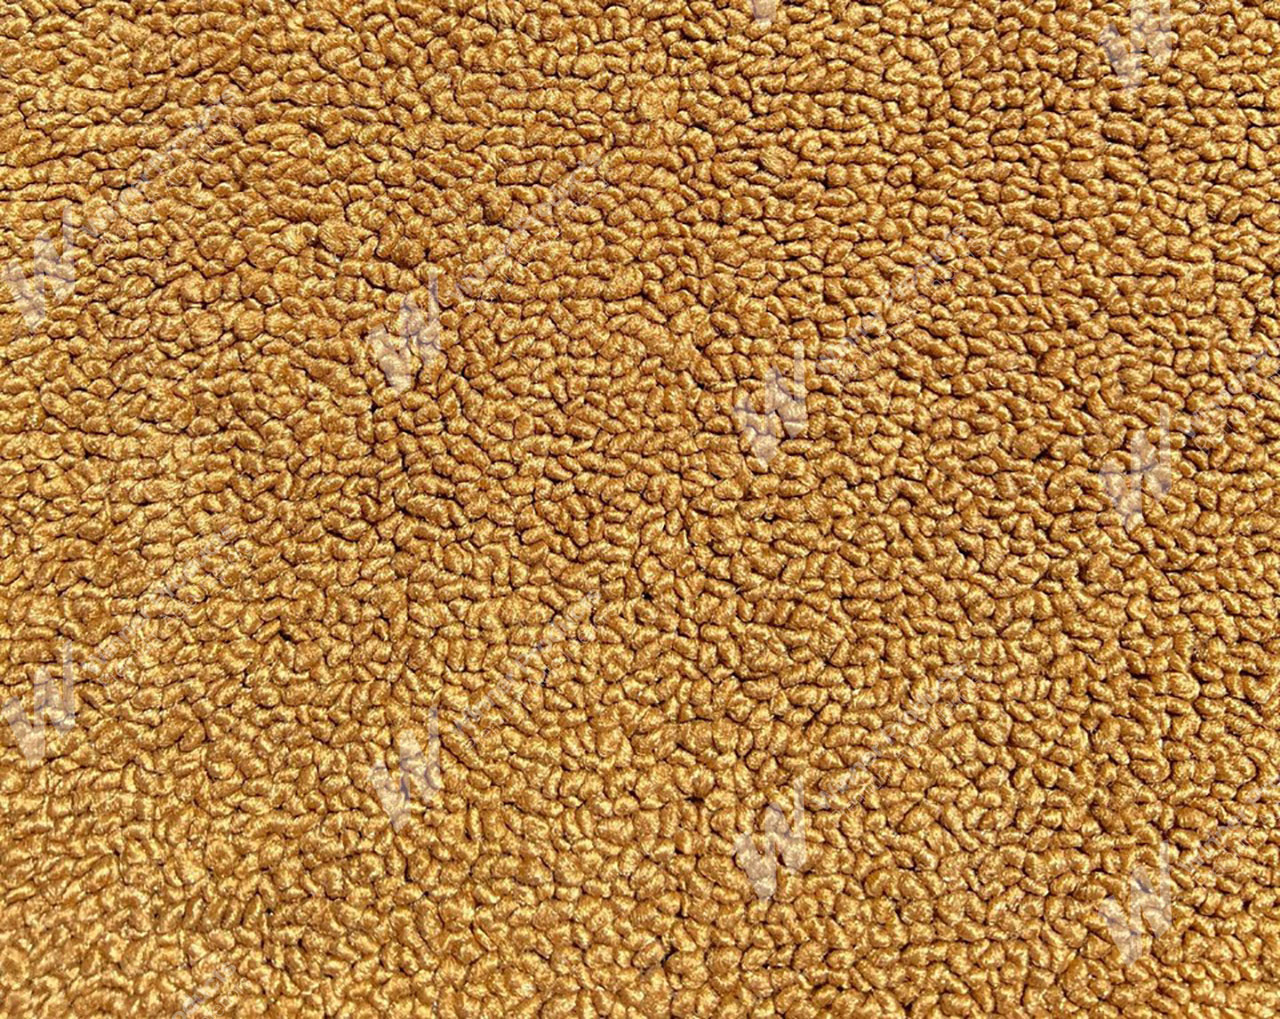 Holden Kingswood HZ Kingswood Ute 67C Tan Carpet (Image 1 of 1)